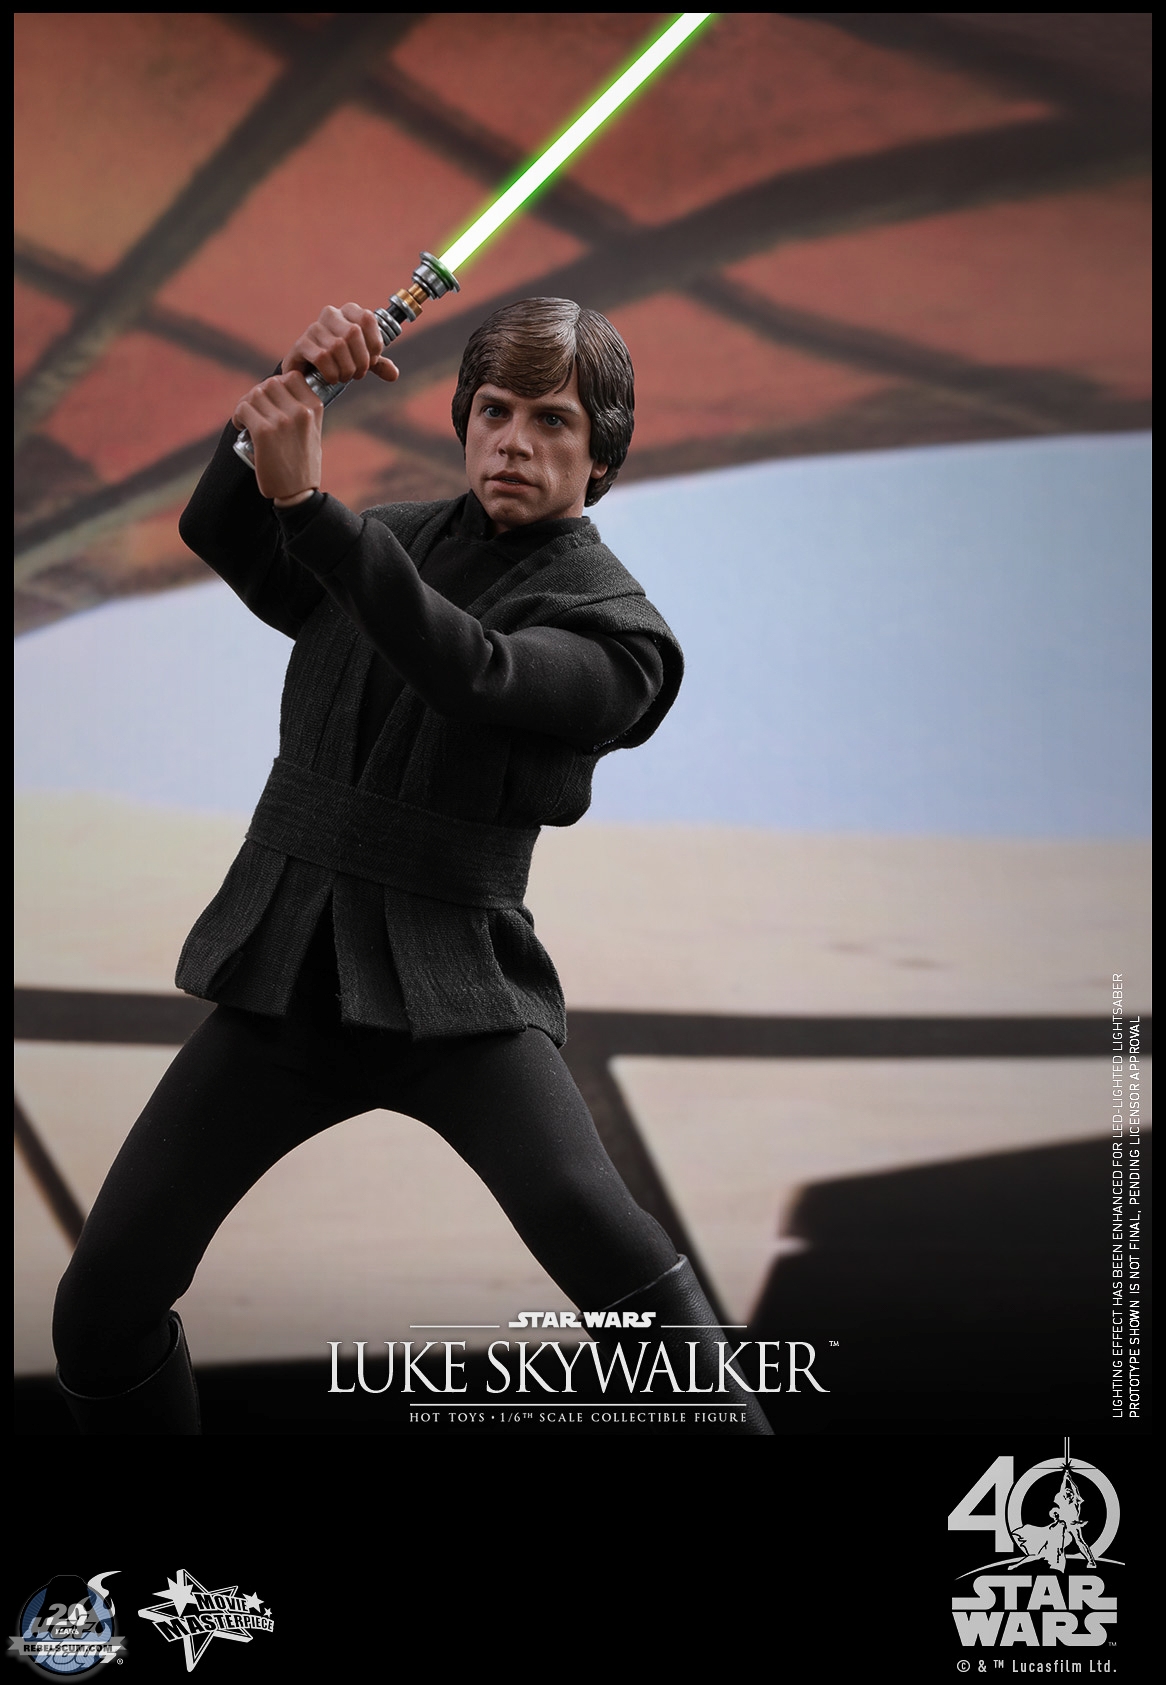 Hot-Toys-MMS429-Return-of-the-Jedi-Luke-Skywalker-008.jpg